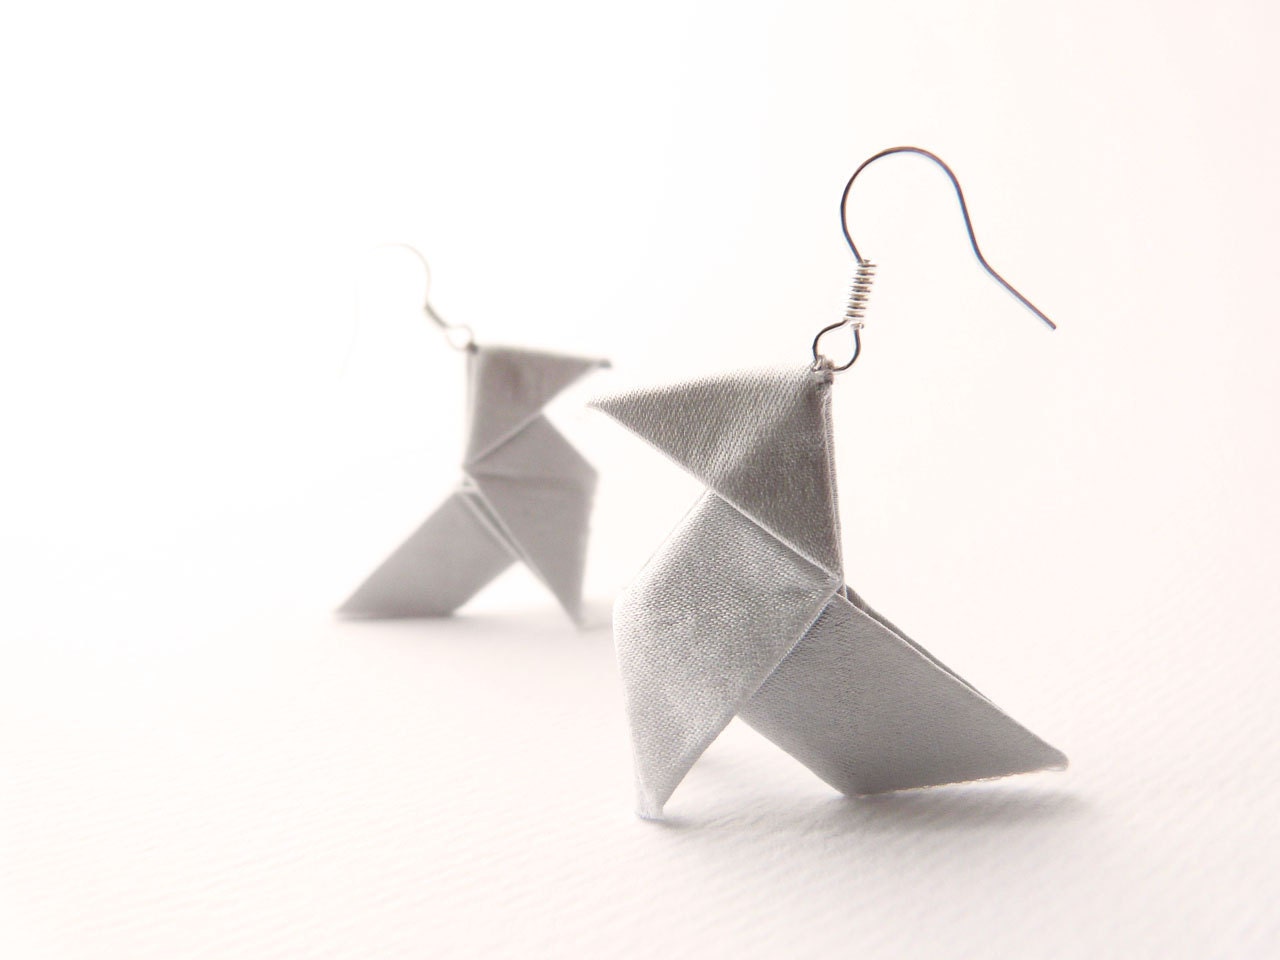 Origami earrings Light grey silk OOAK by Jye, Hand-made in France - Joliejye